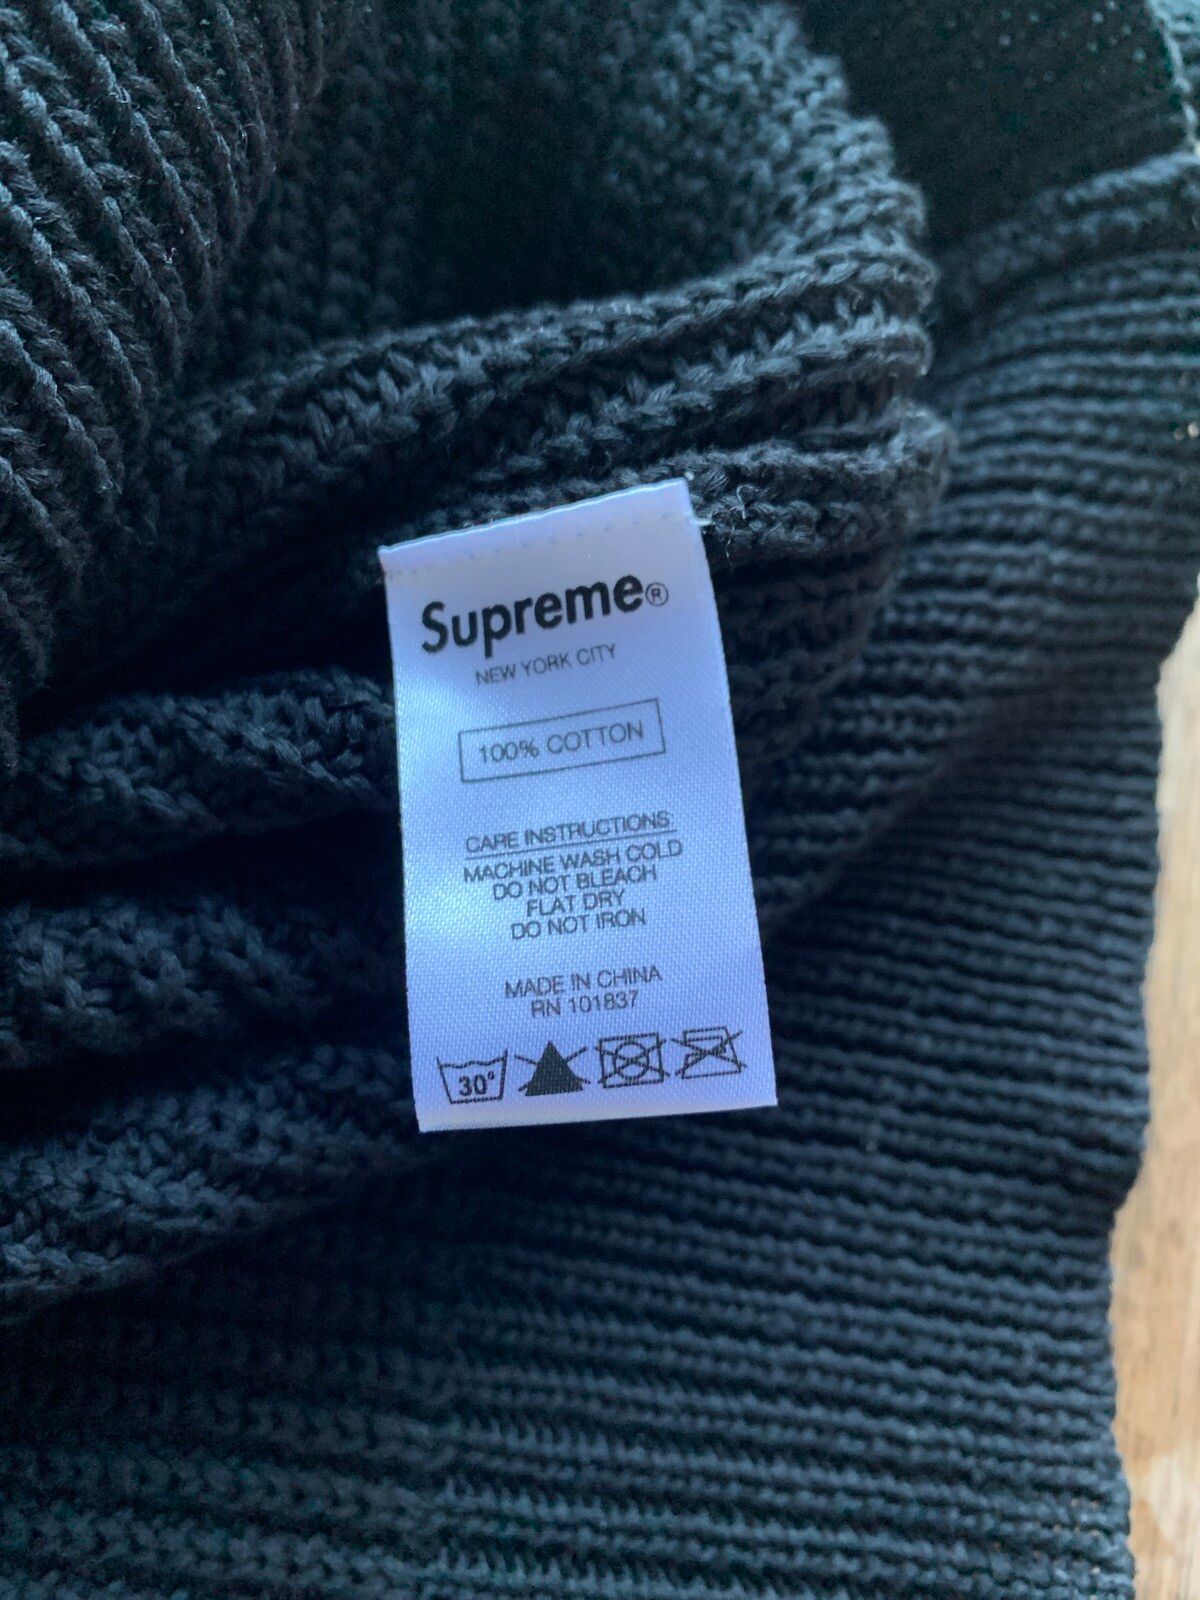 Supreme Supreme CDG SHIRT Sweater | Grailed